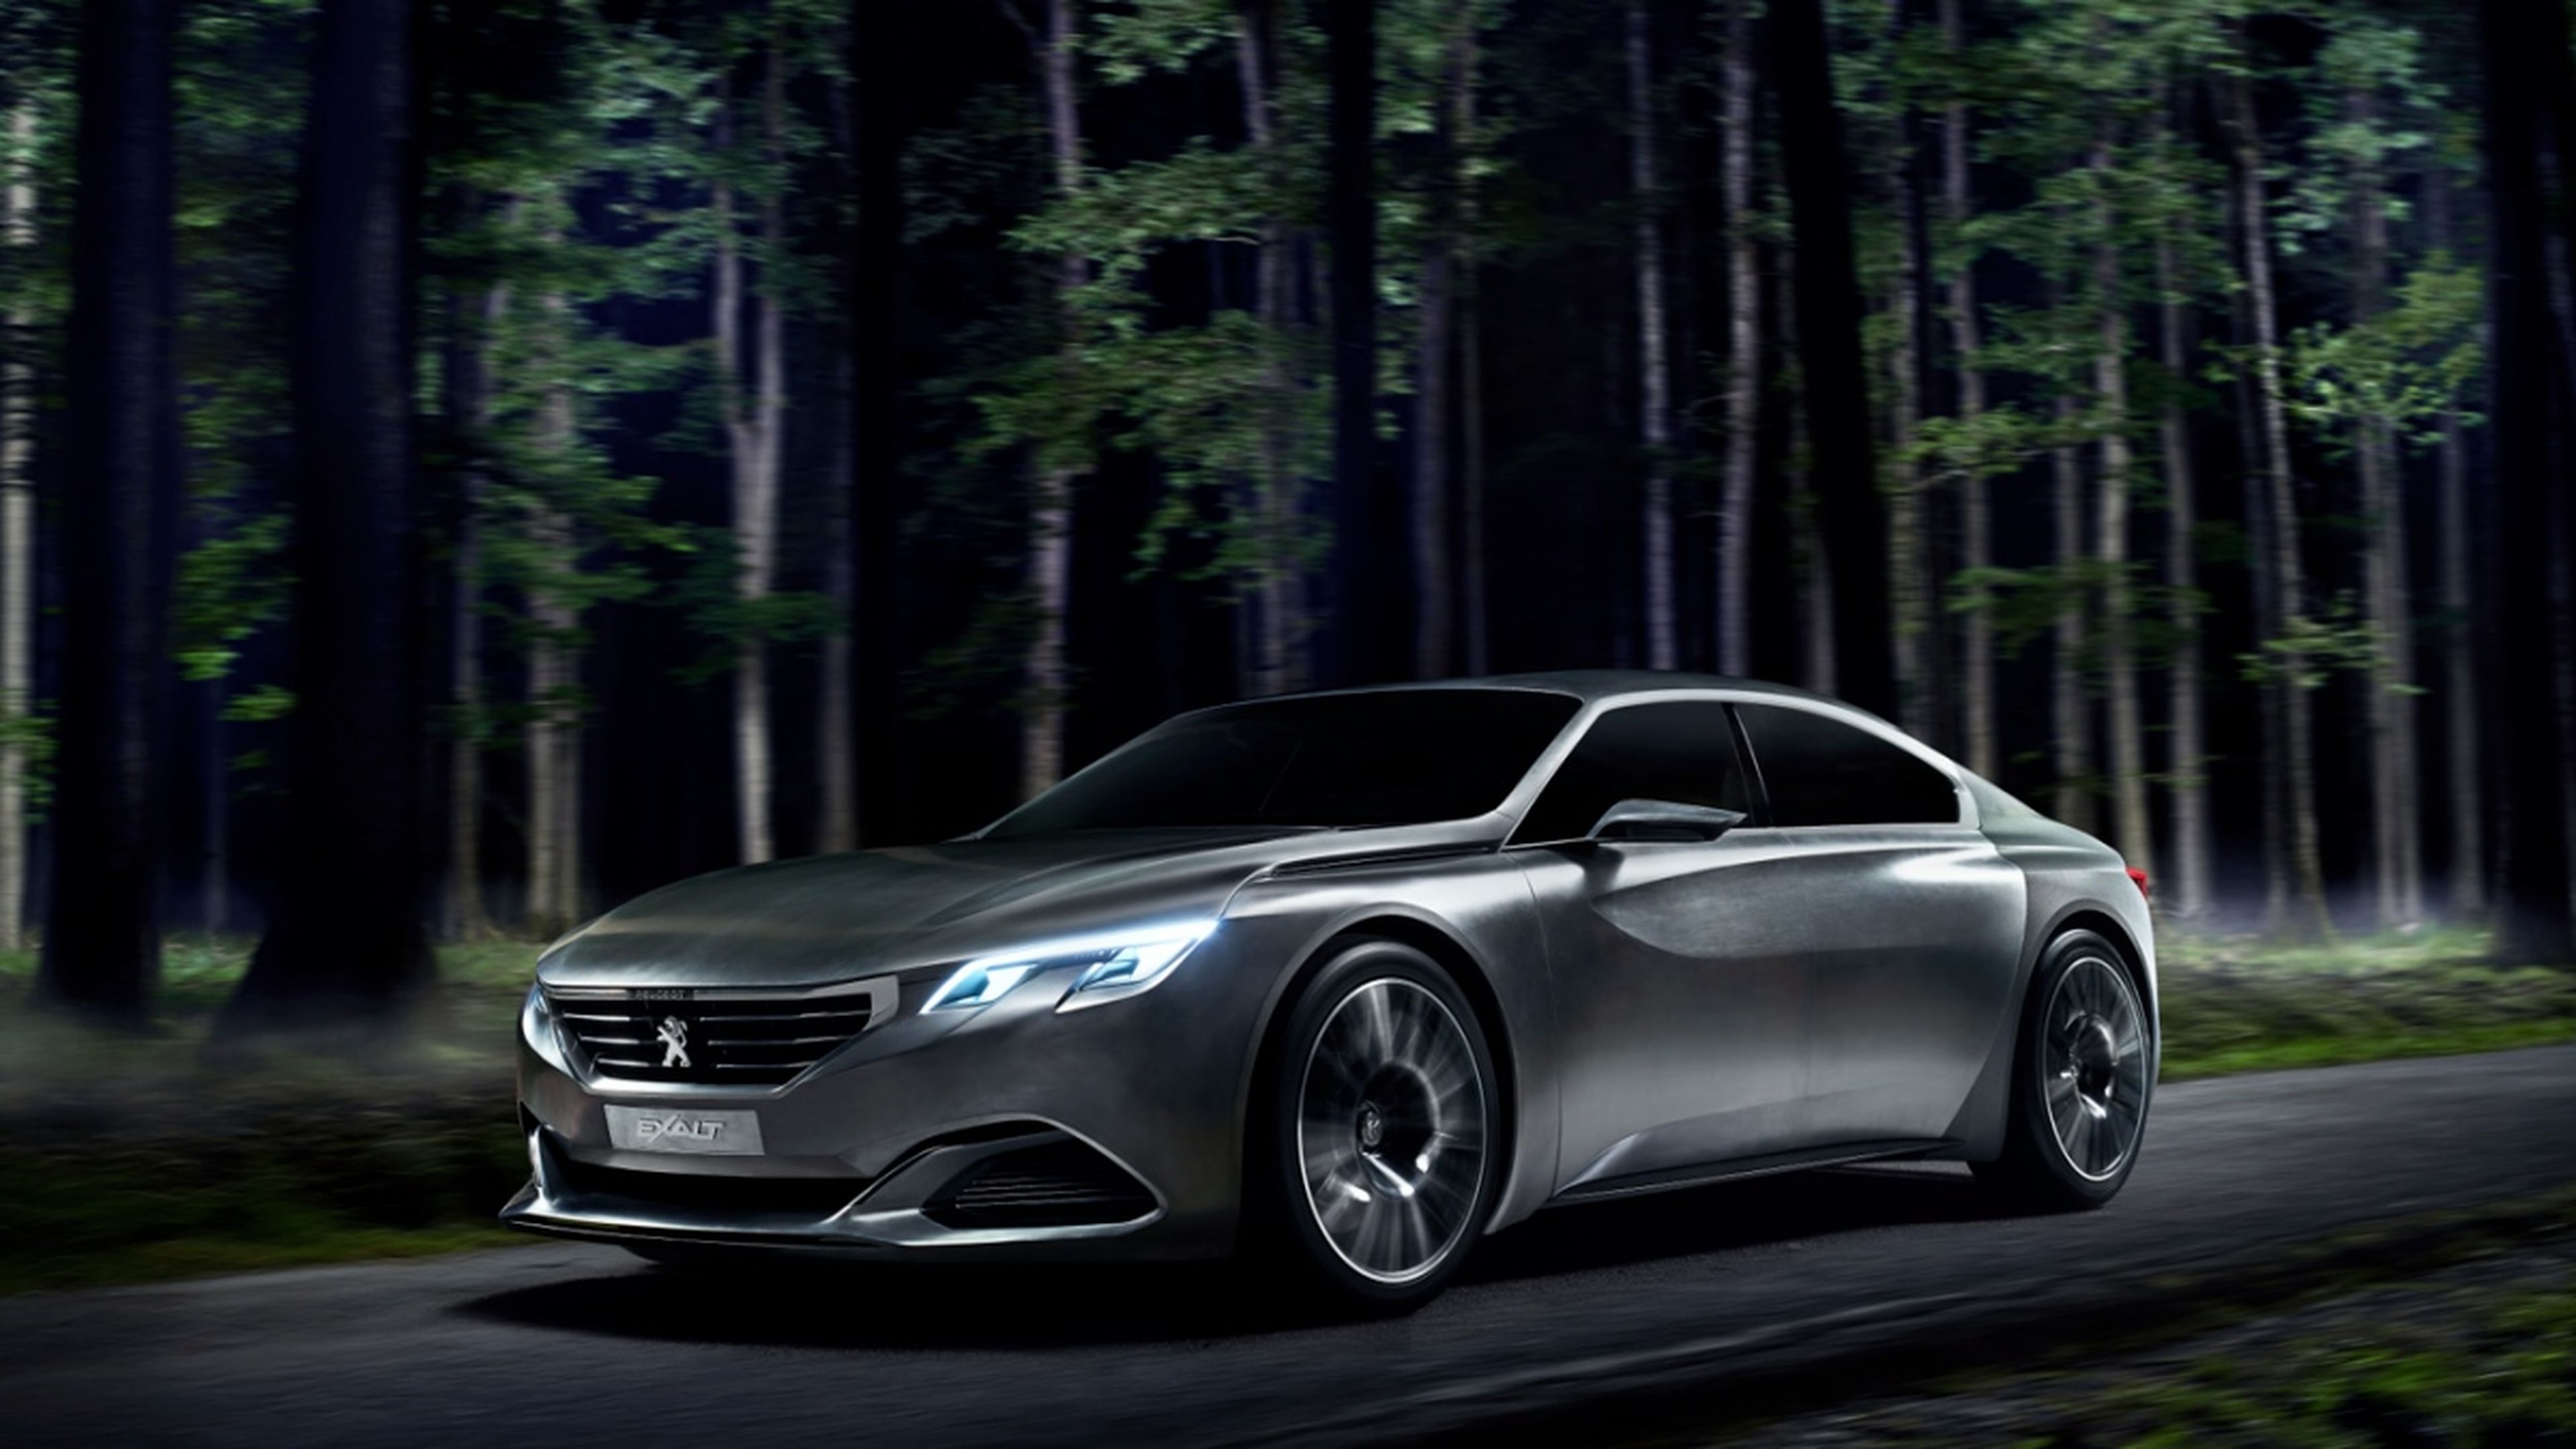 Concept Peugeot Exalt lateral